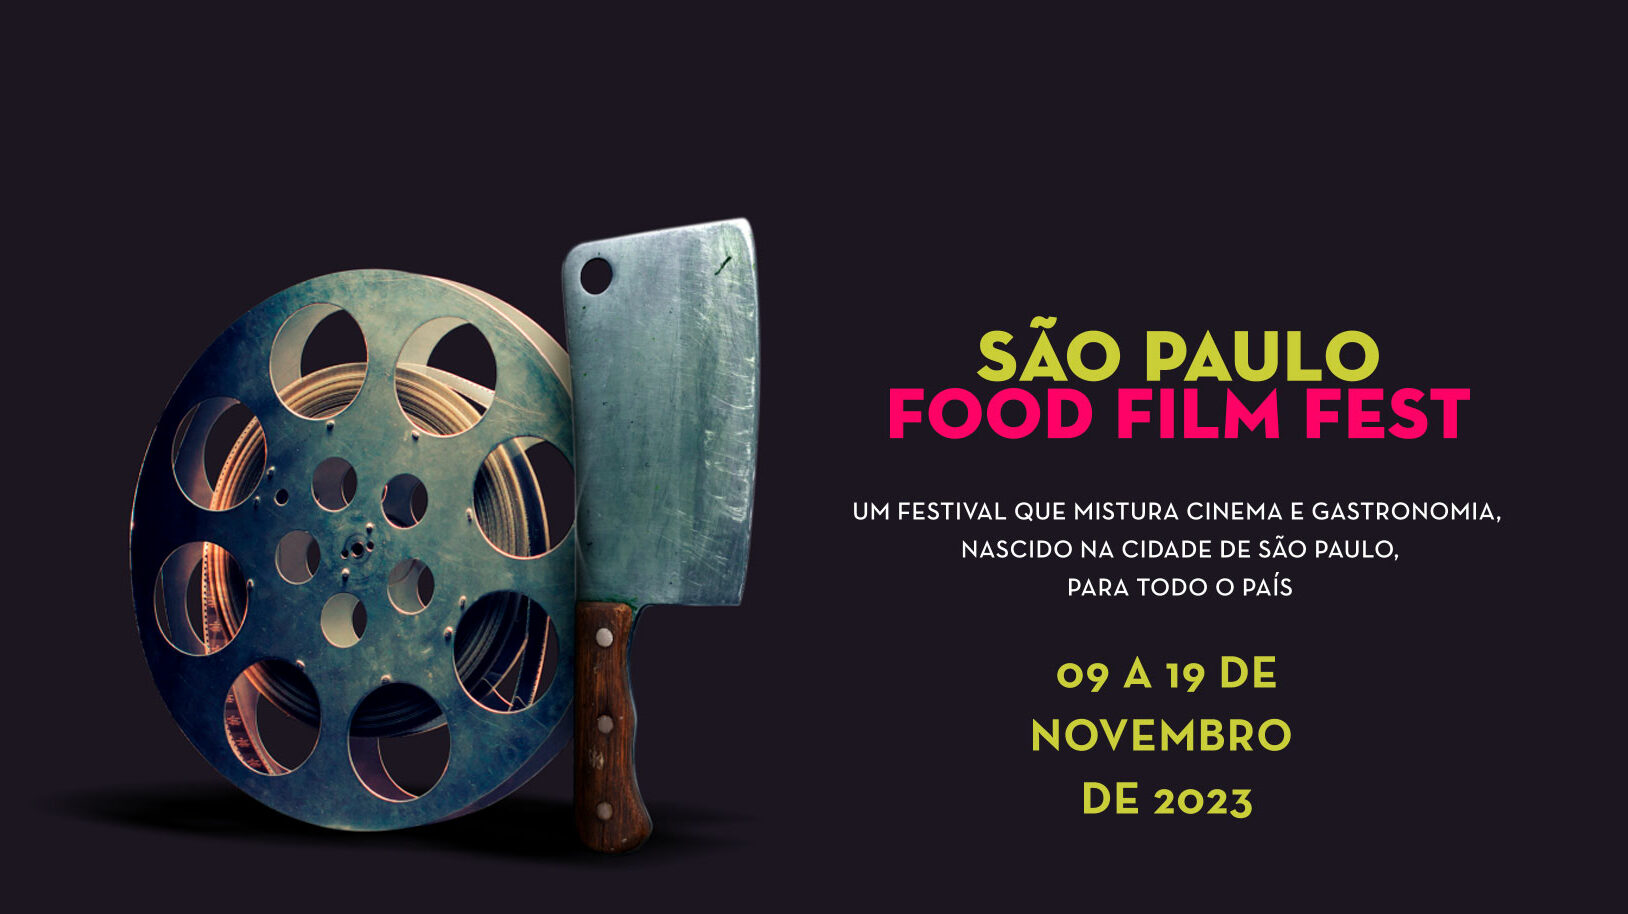 Food Film Fest São Paulo